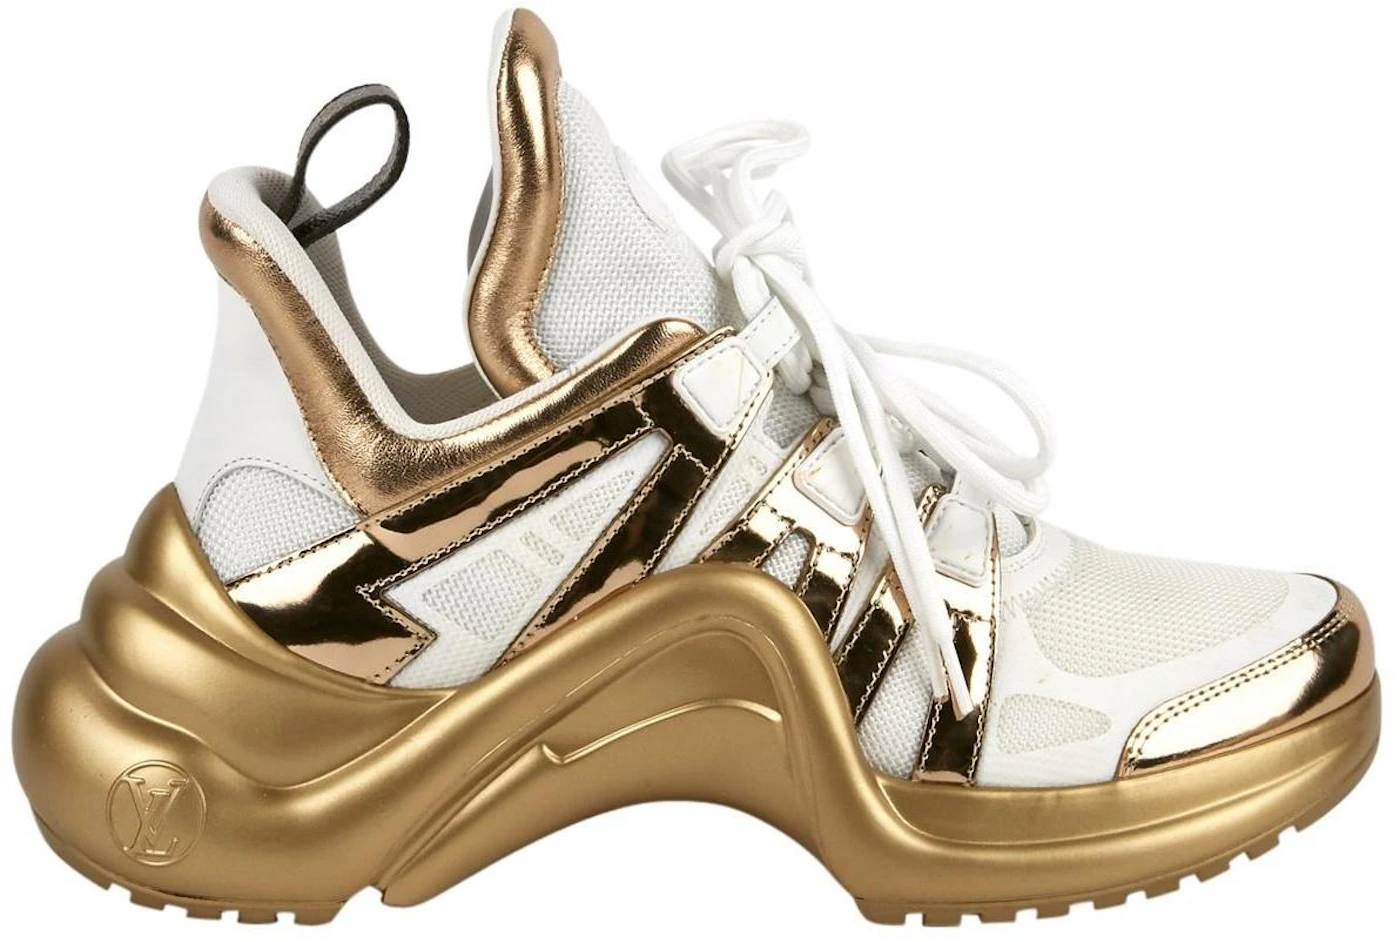 Louis Vuitton, Shoes, Louis Vuitton Archlight Silver Metallic Sneakers  Shoes